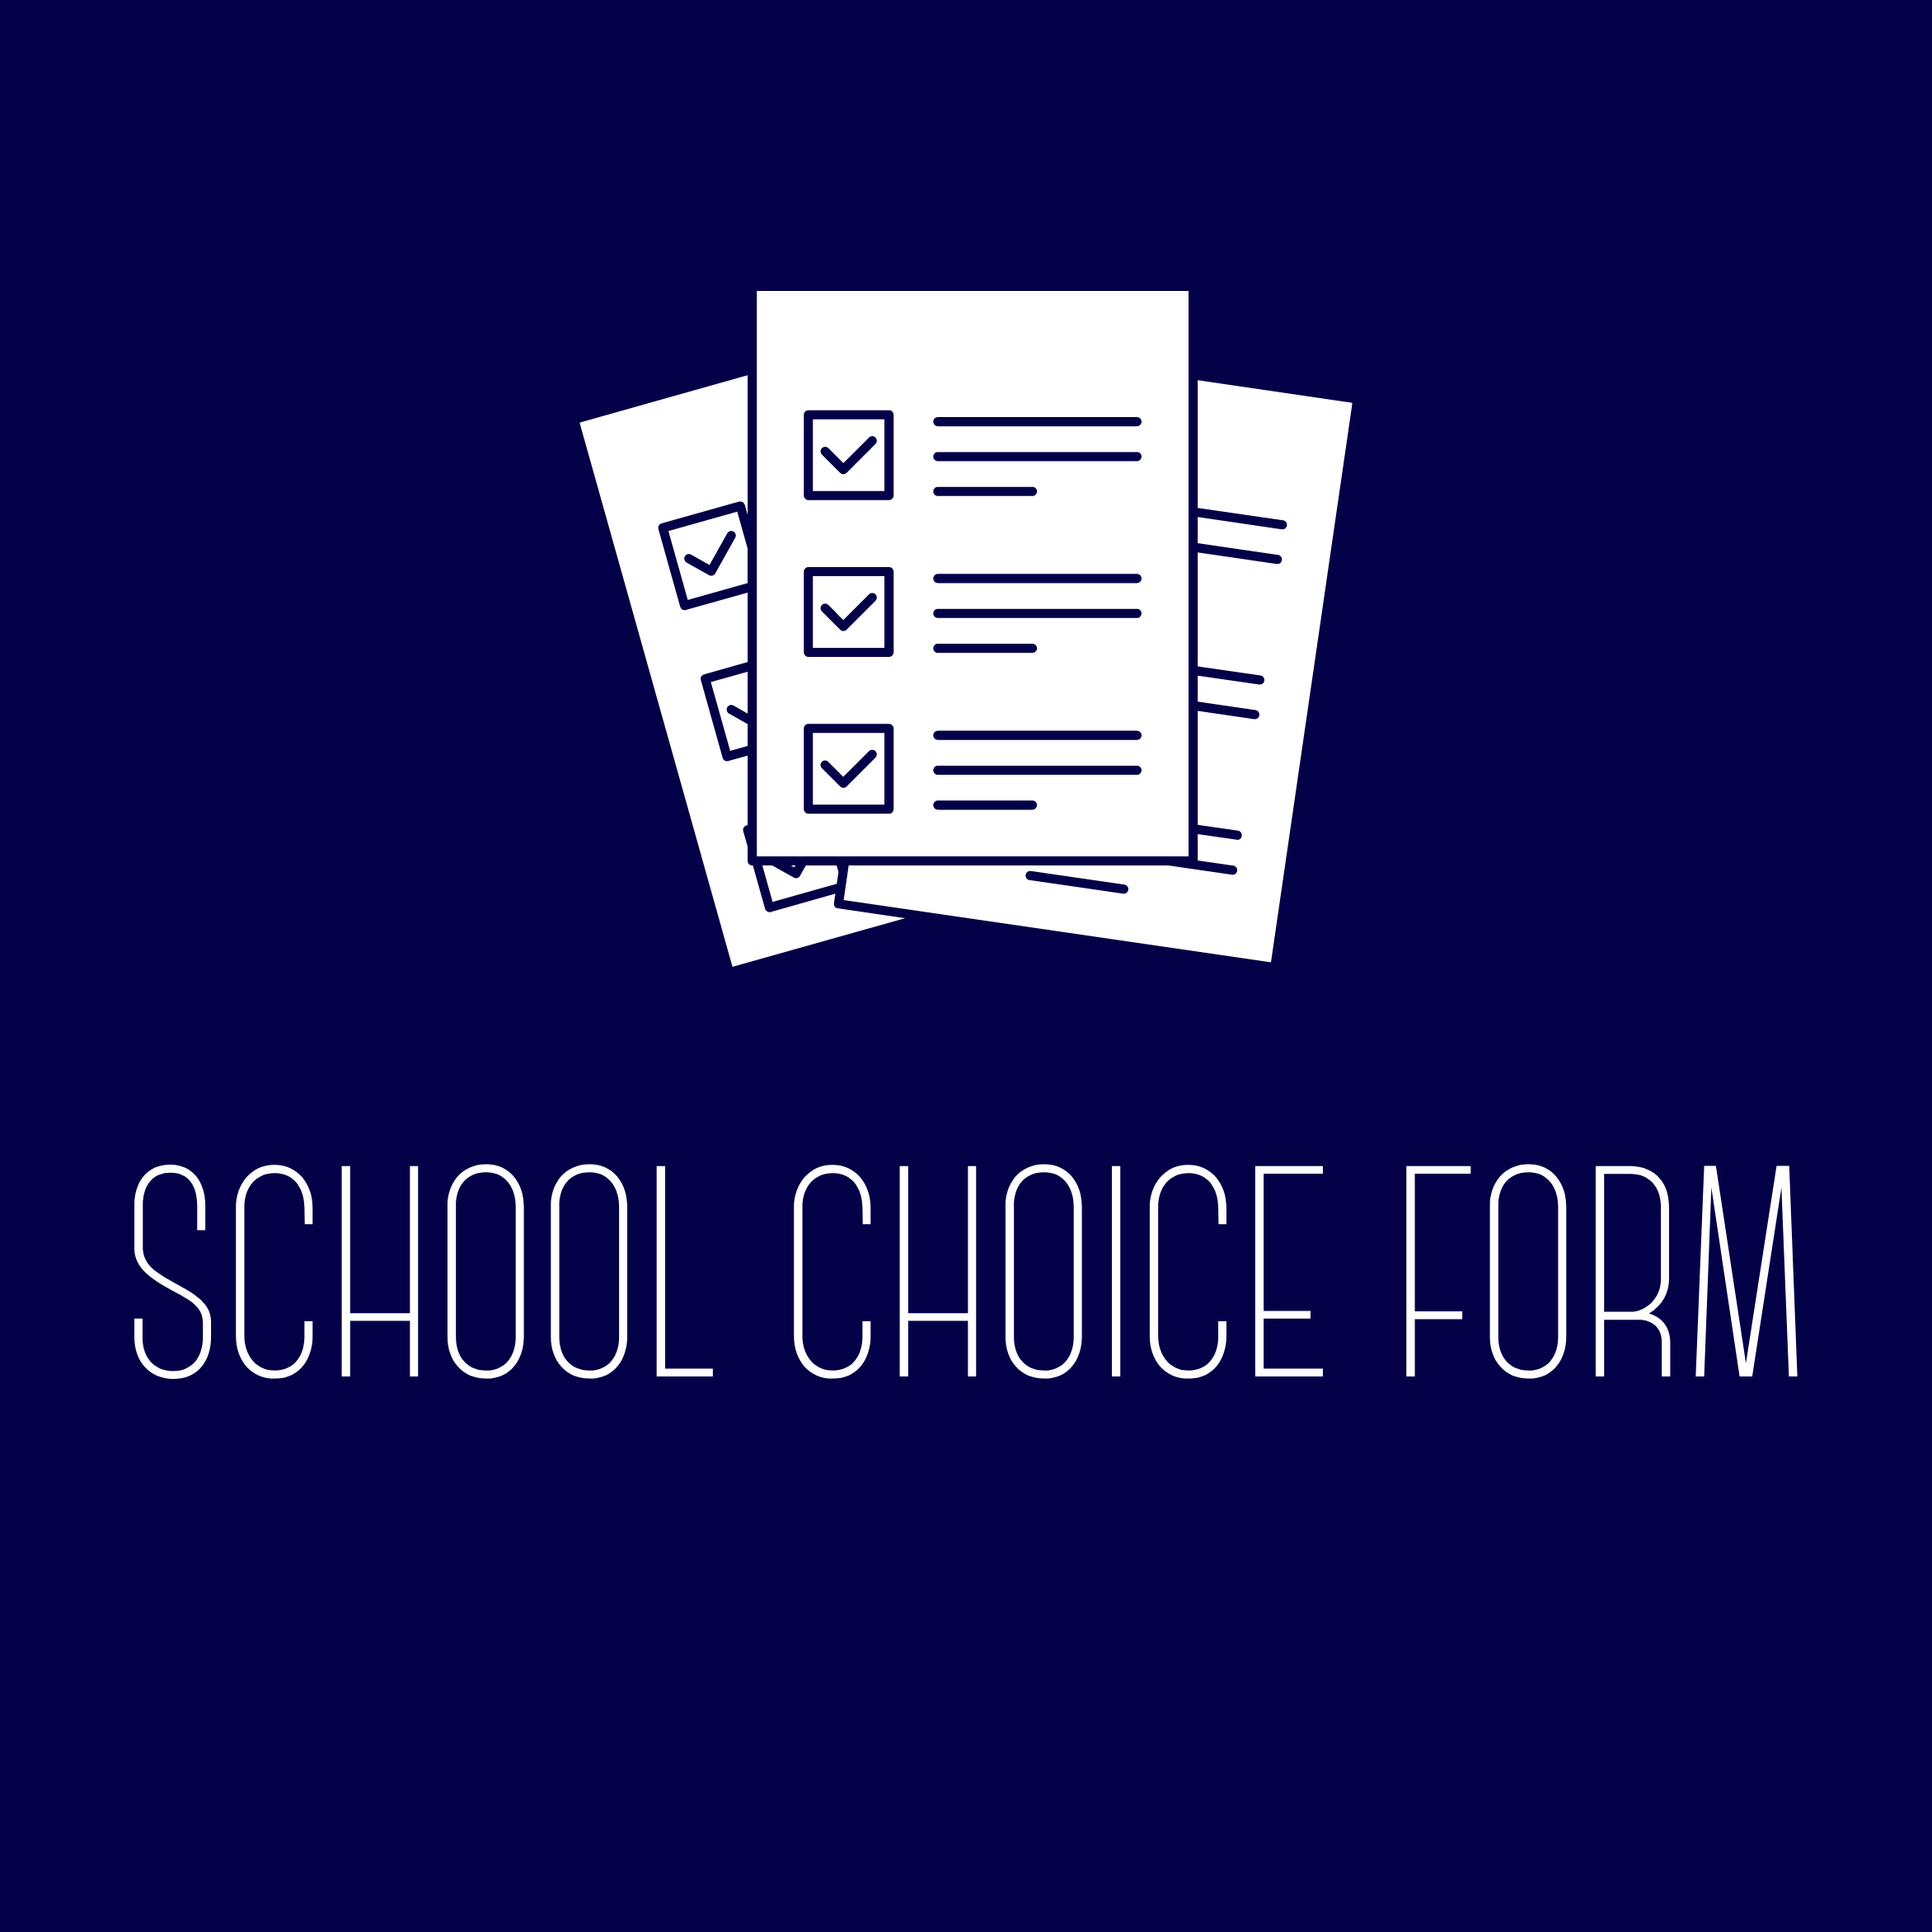 School Choice Form